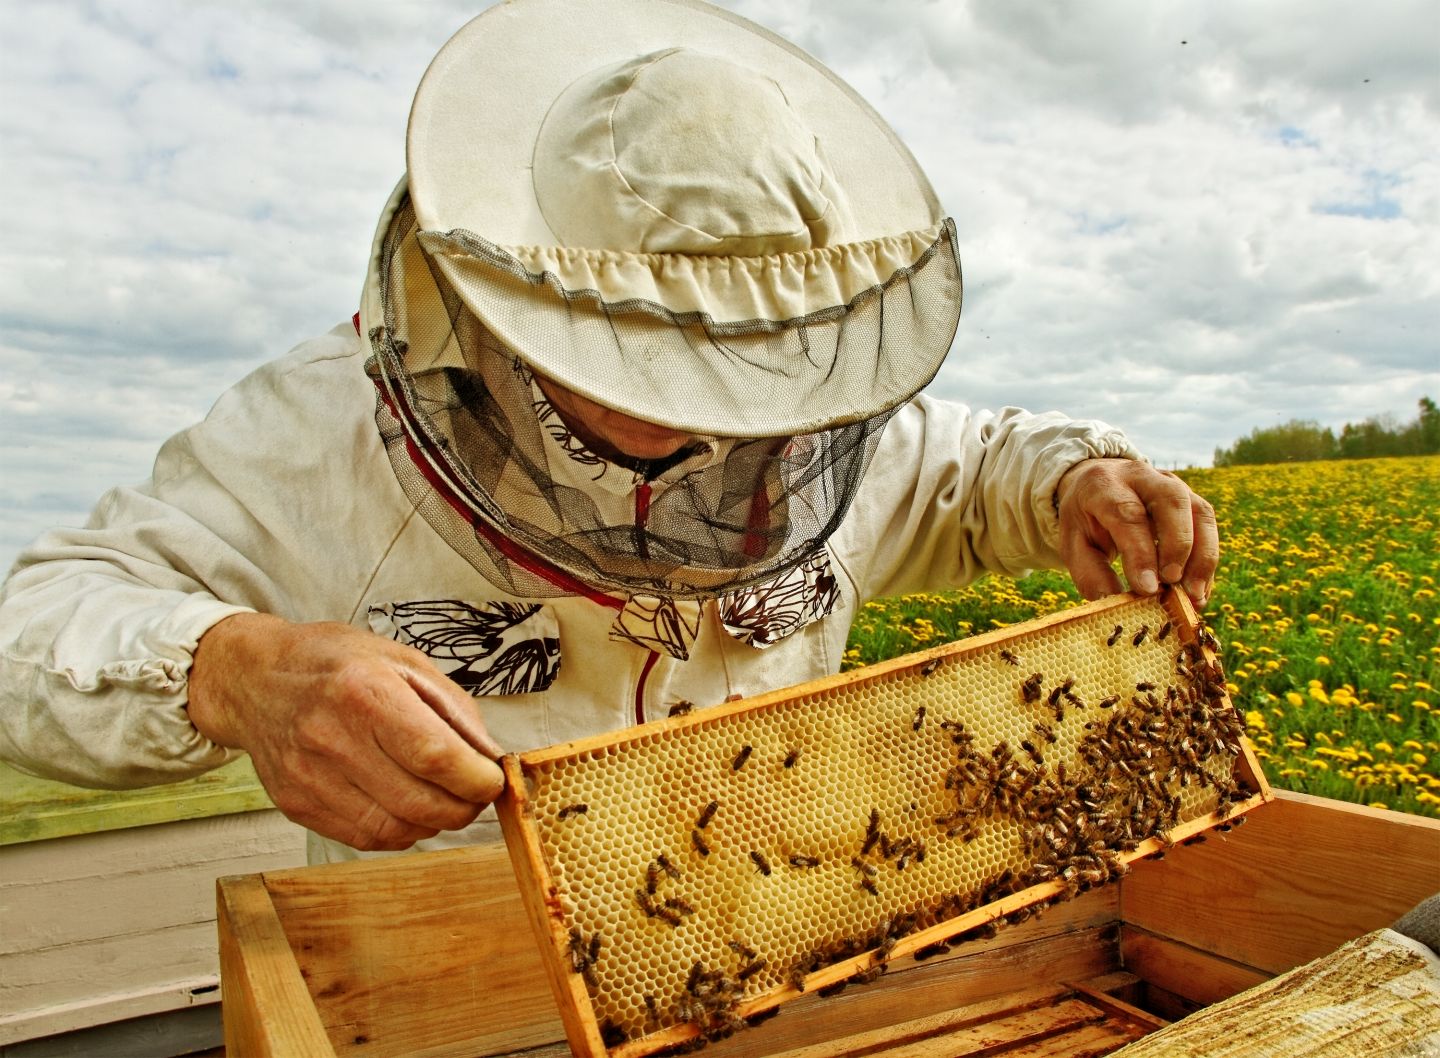 Nagy István: A kormány idén 600 millió forintot biztosít a méhészek támogatására 